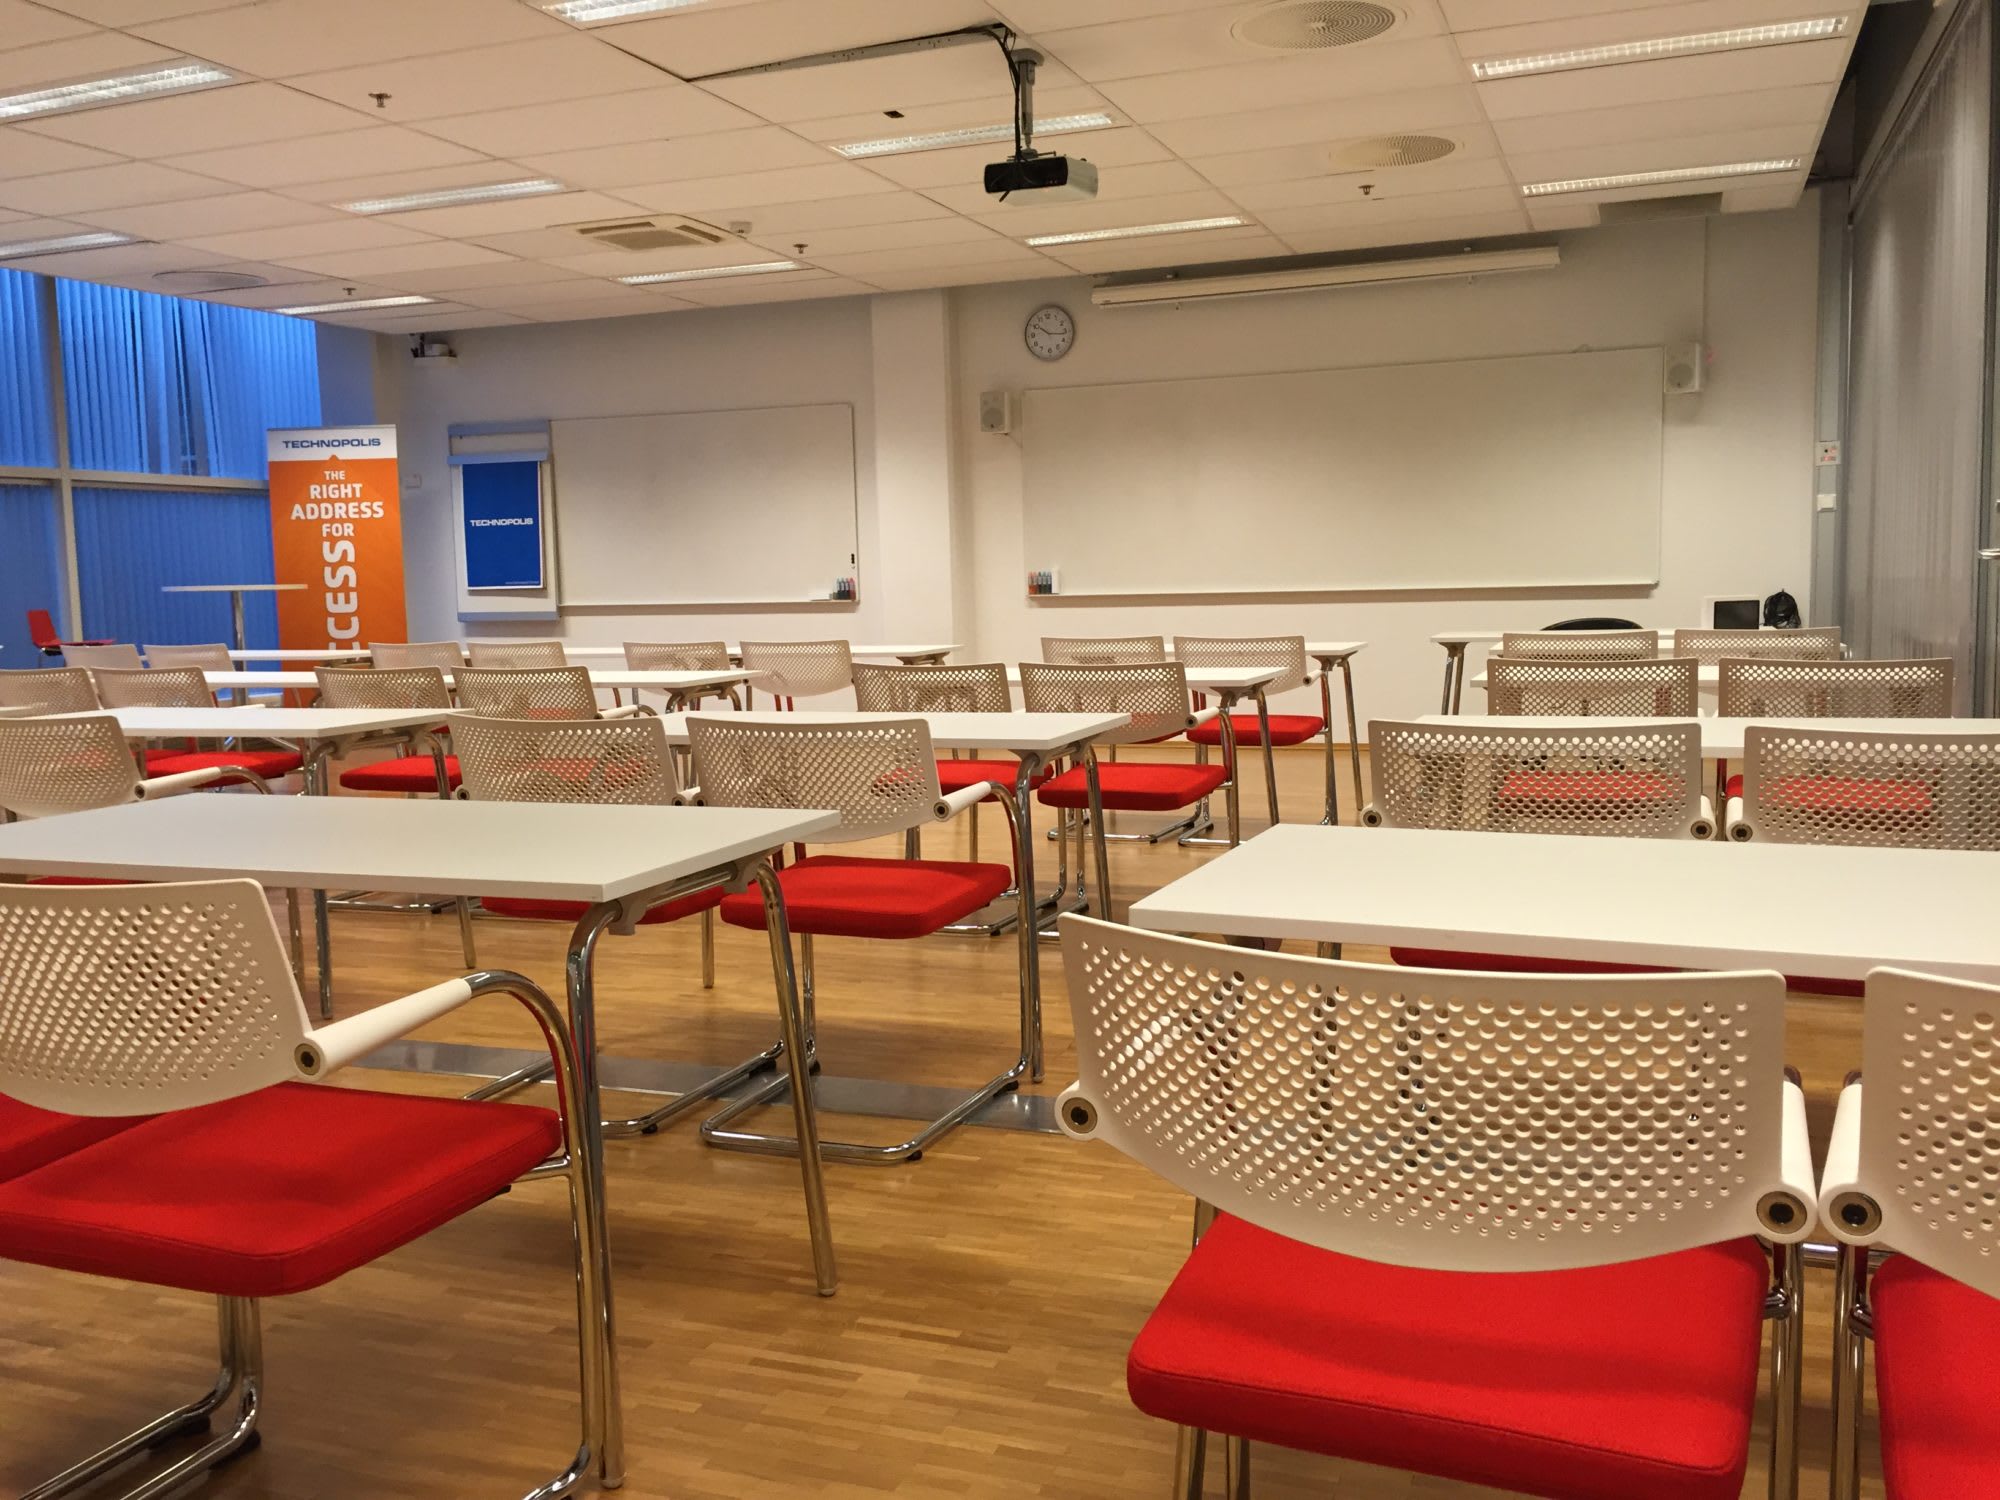 Møterom med standard oppsett klasserom for 40 personer. Det er mulig å møblere til gruppebord, u-bord, styrebord og kino.